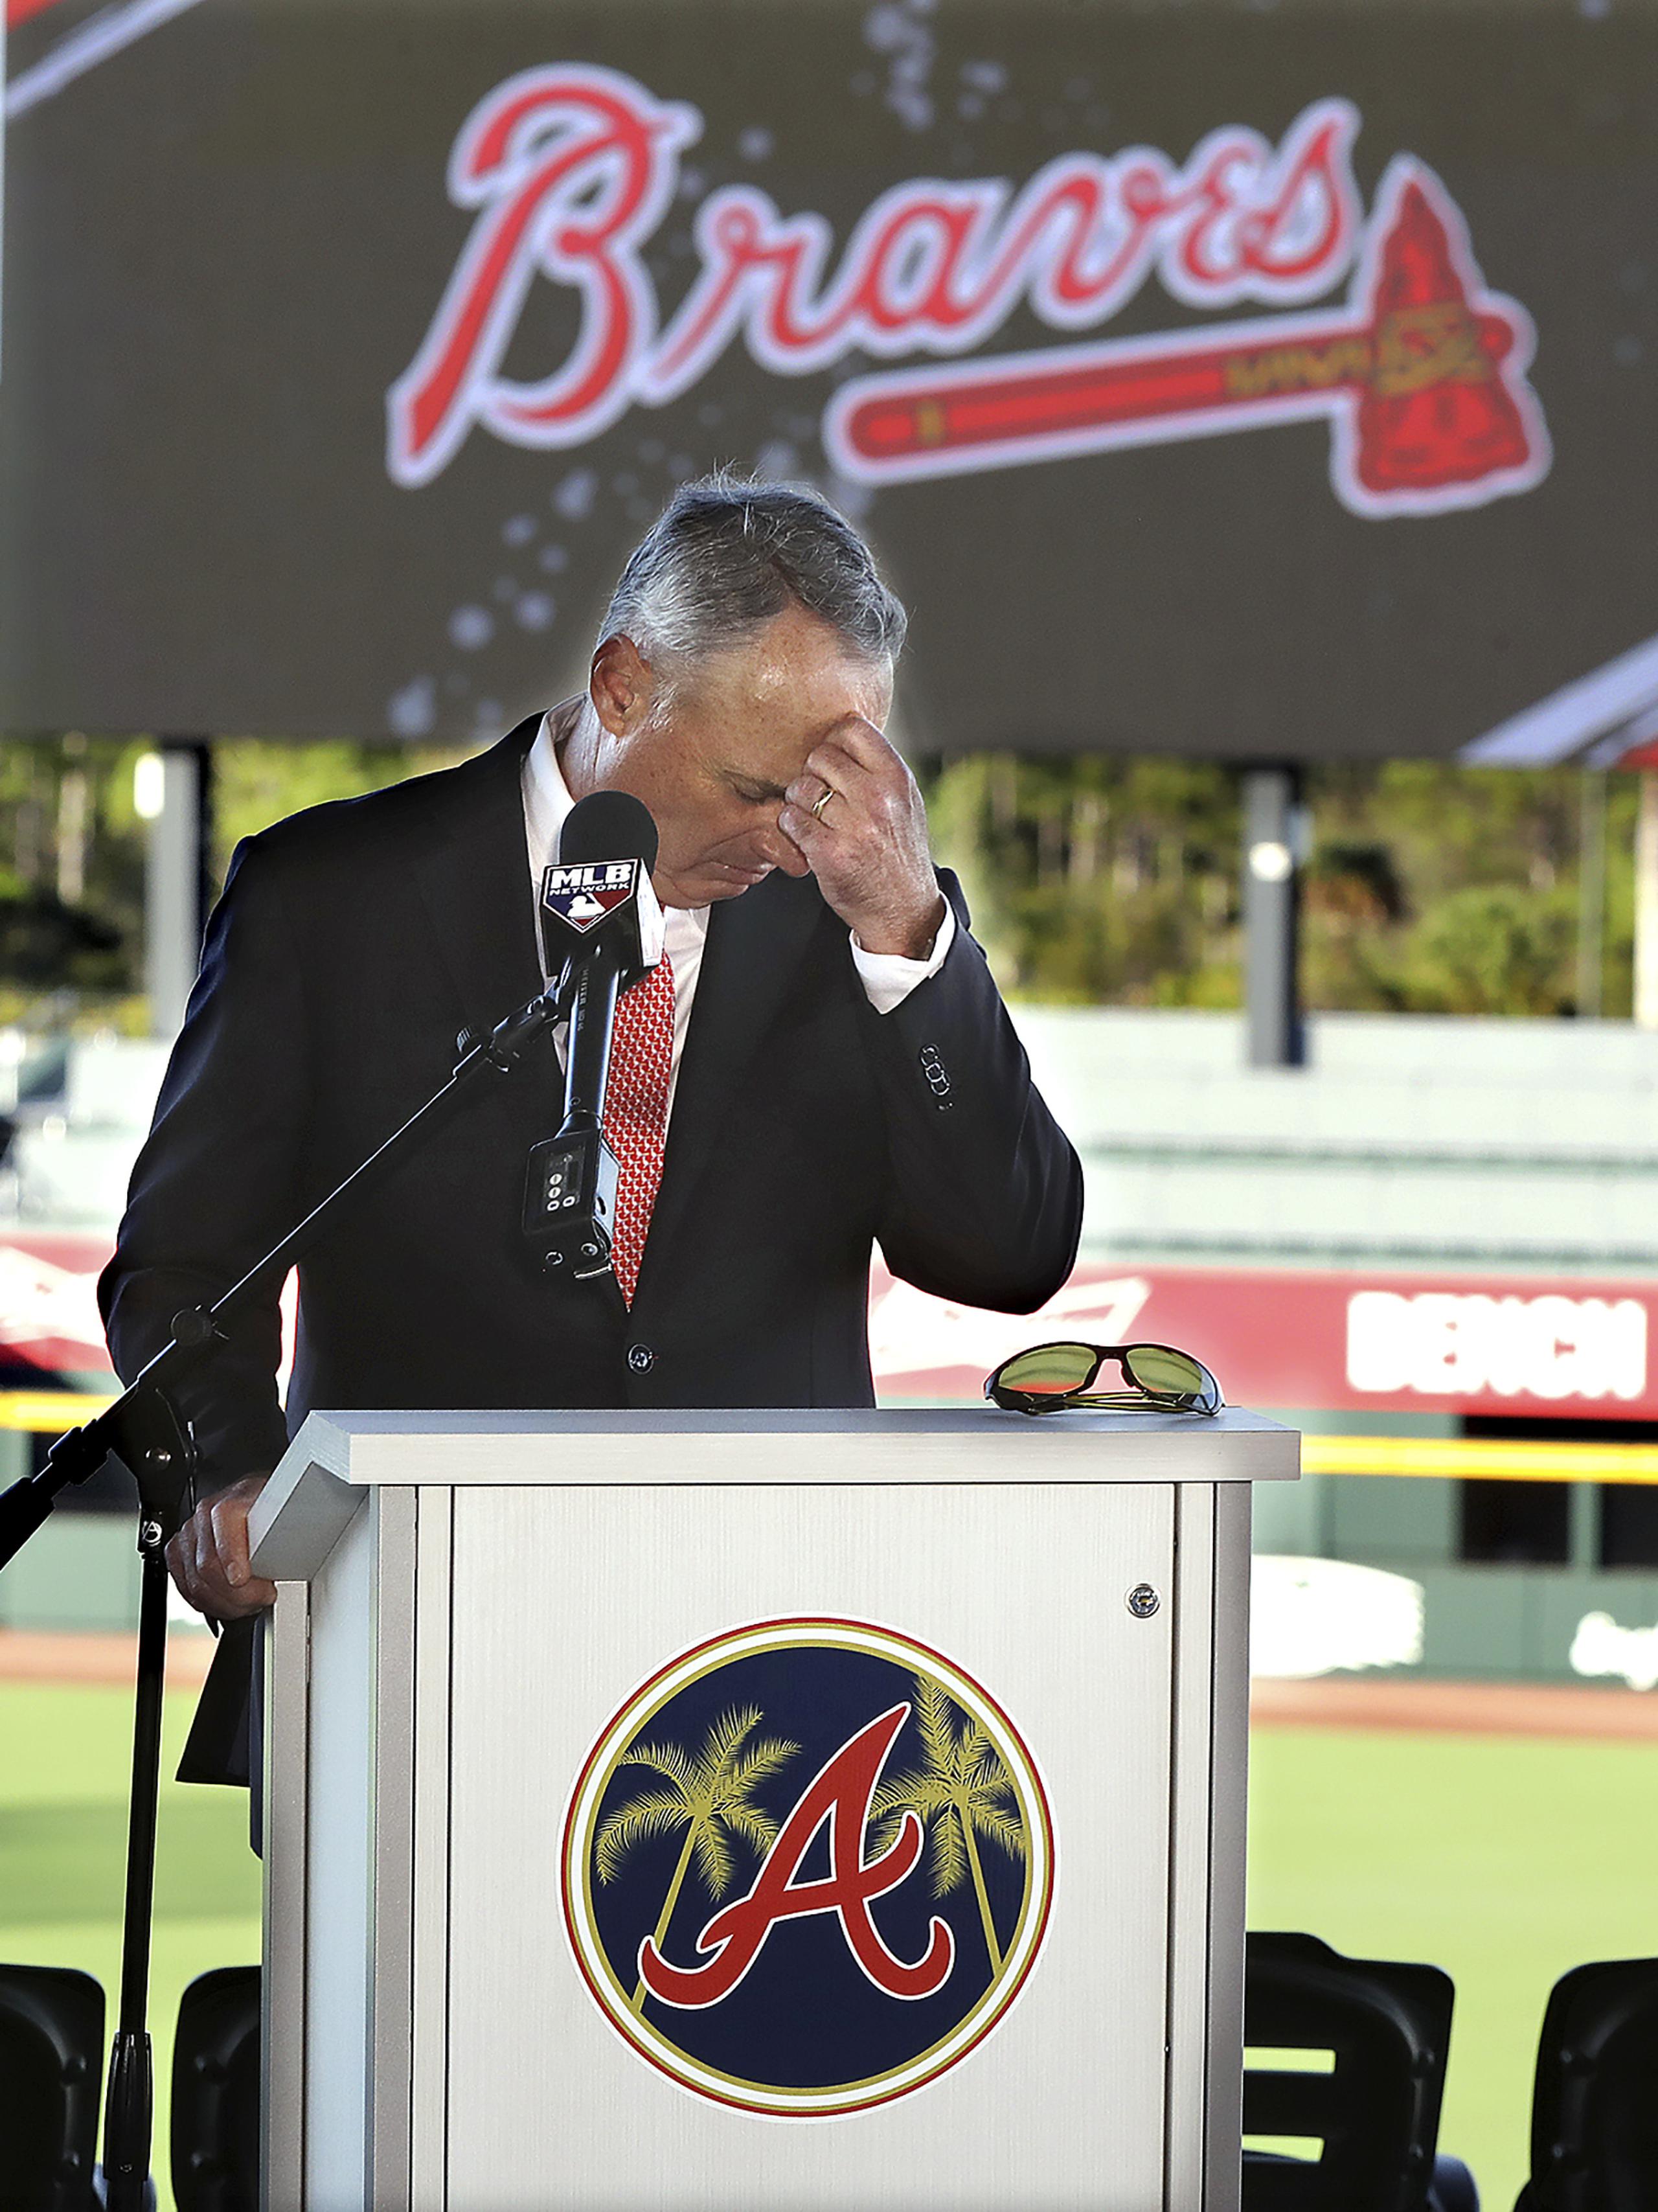 El comisionado de las Grandes Ligas, Rob Manfred, hace una pausa antes de responder una pregunta durante una conferencia en el campo de pretemporada de los Bravos de Atlanta.